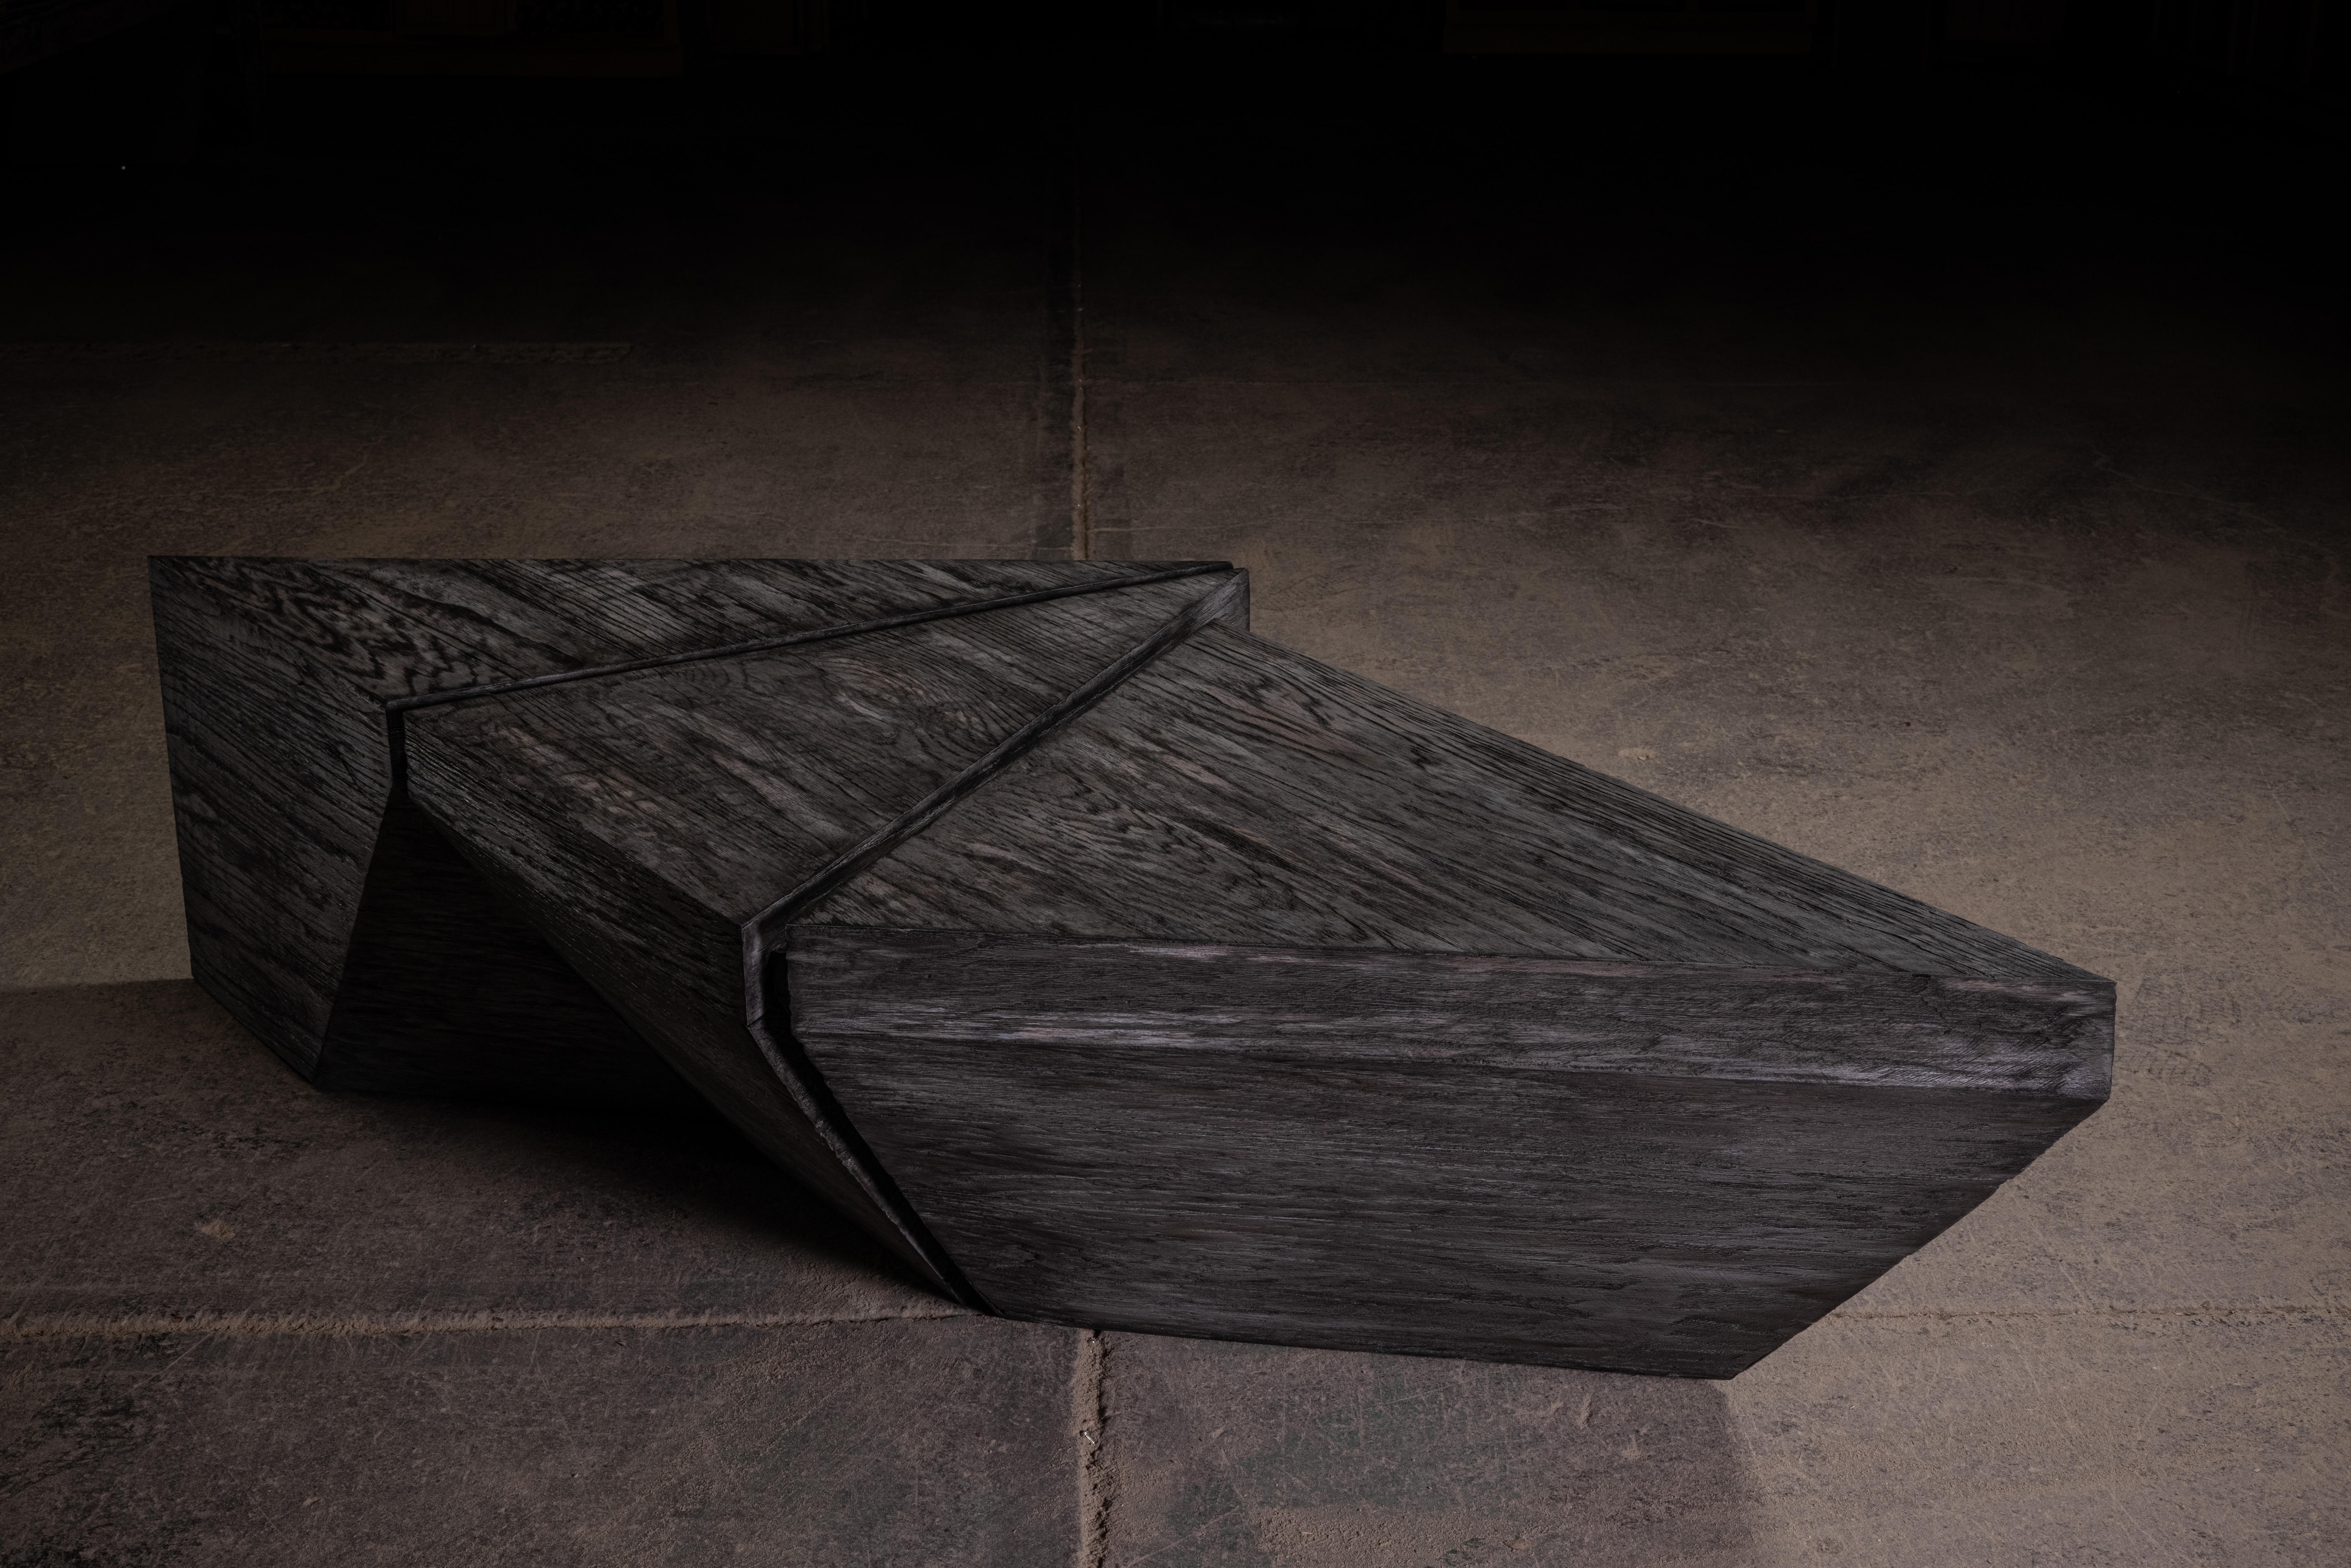 Table basse géométrique en chêne noir massif vintage, inspirée du mouvement Brutalist.
La table est formée par 3 triangles.